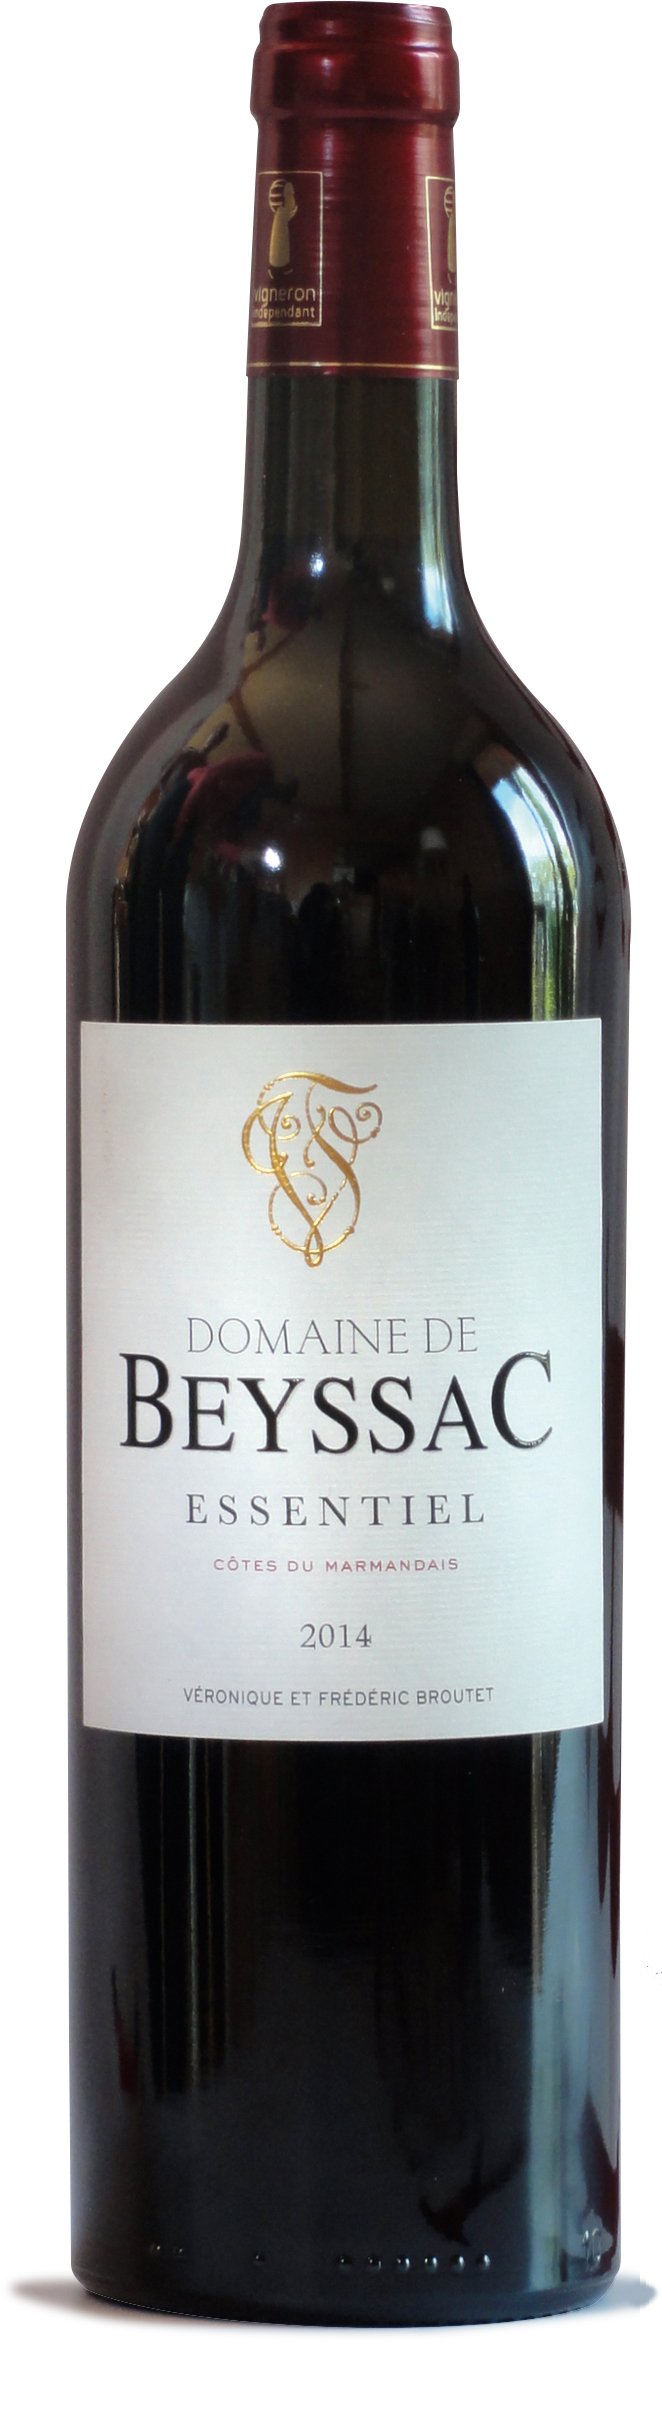 Au domaine de Beyssac, les bouteilles ne dépassent pas 500 g et sont fabriquées à Cognac.